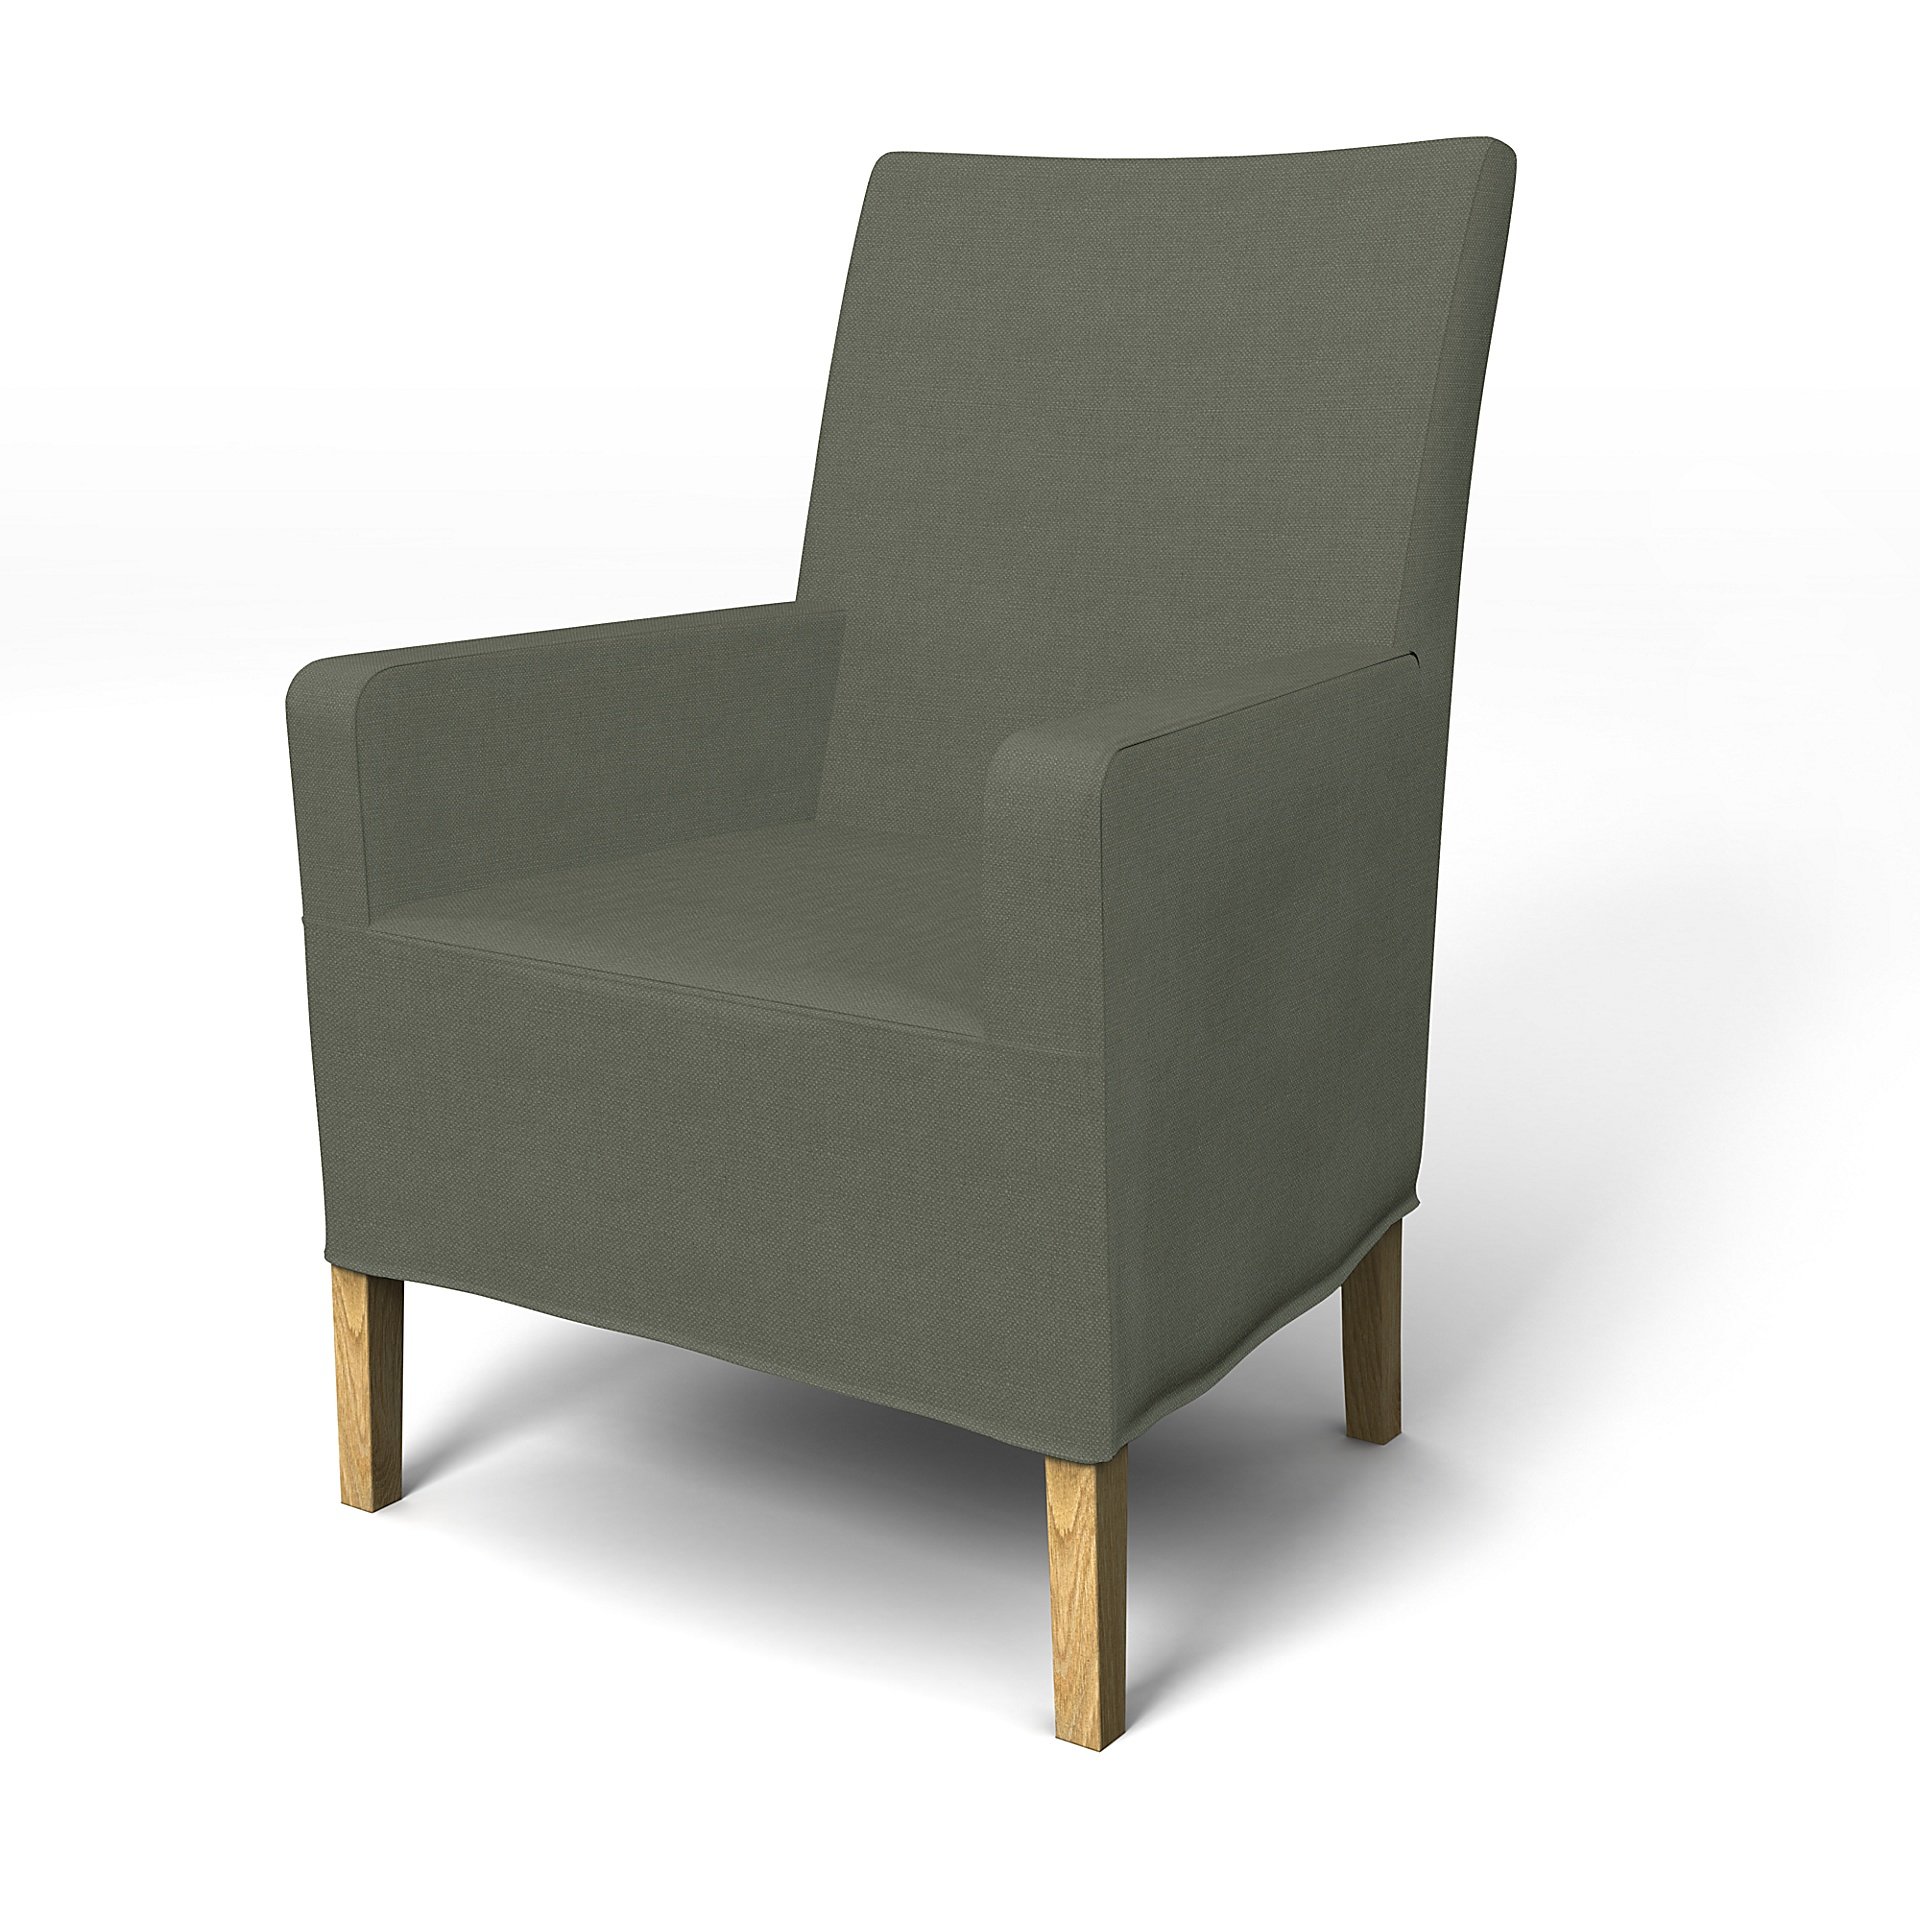 IKEA - Henriksdal, Chair cover w/ armrest, medium length skirt, Rosemary, Linen - Bemz